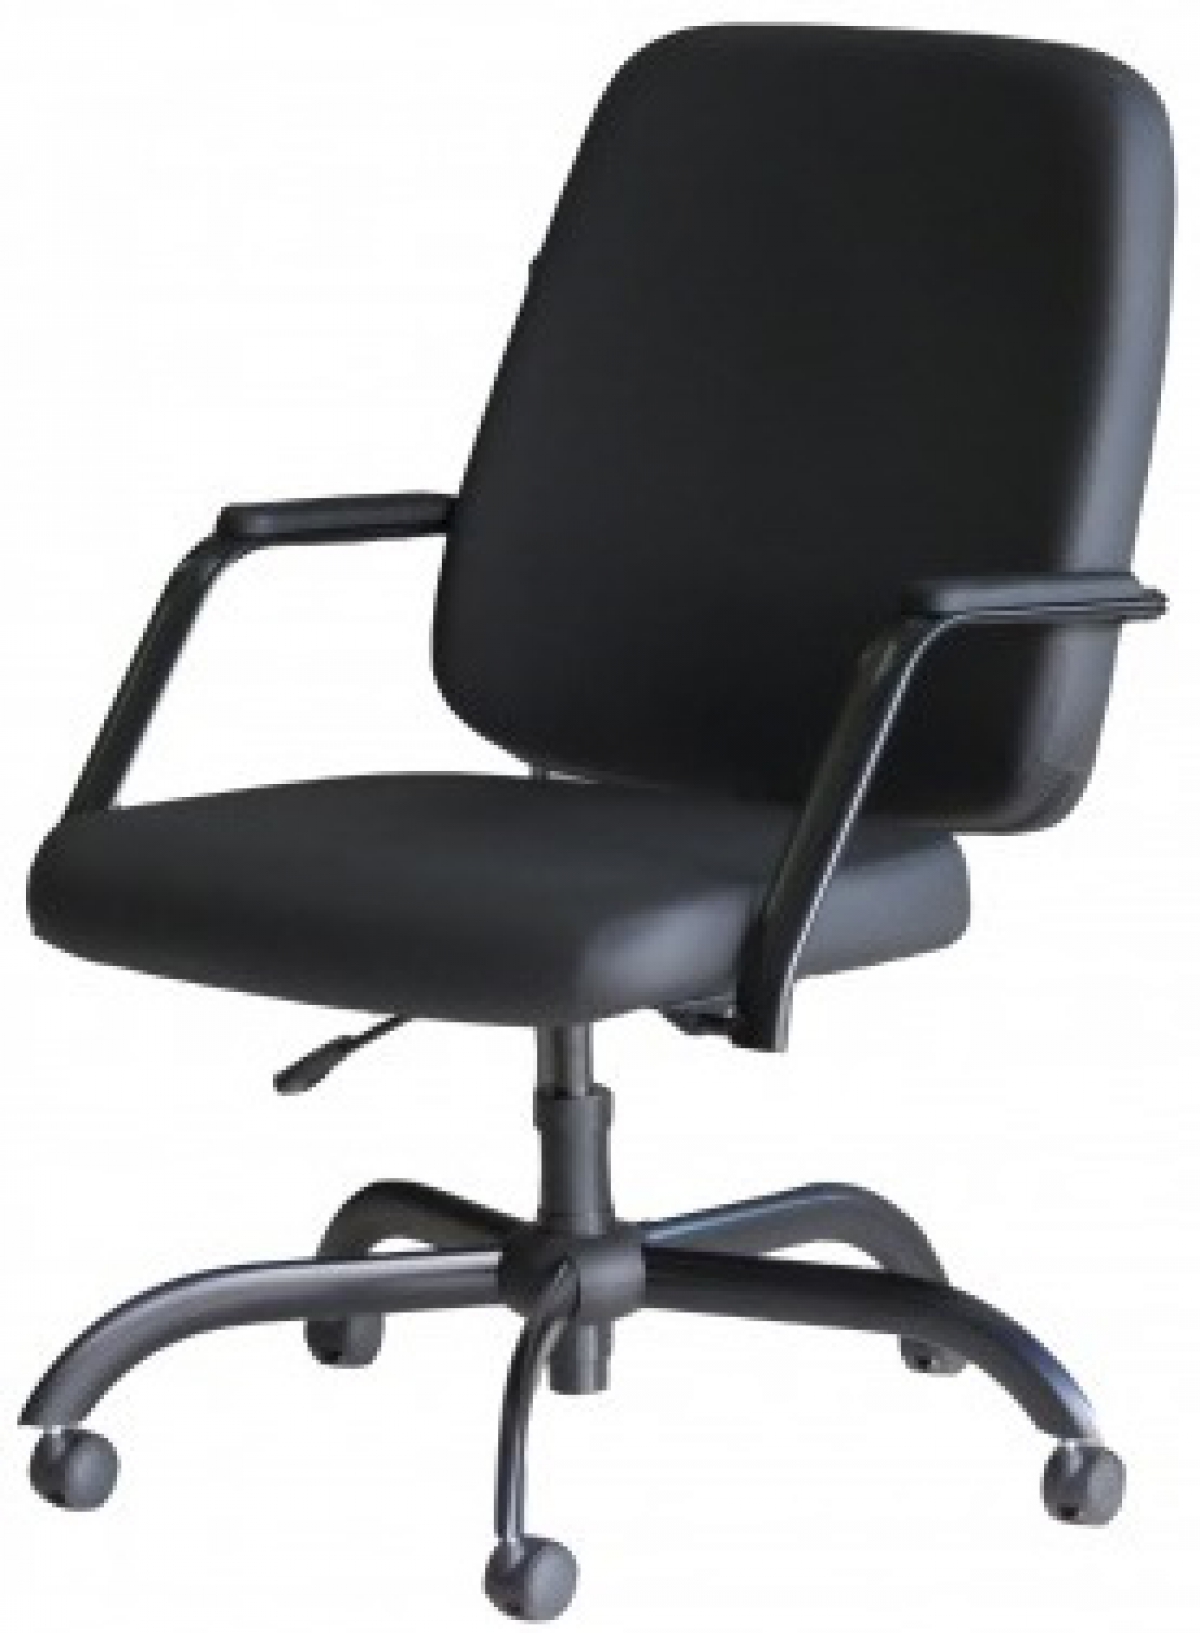 CAD - 42 Cadeira Para Escritório Presidente Giratória Com Braço Estofada Suporta Ate 150 kg